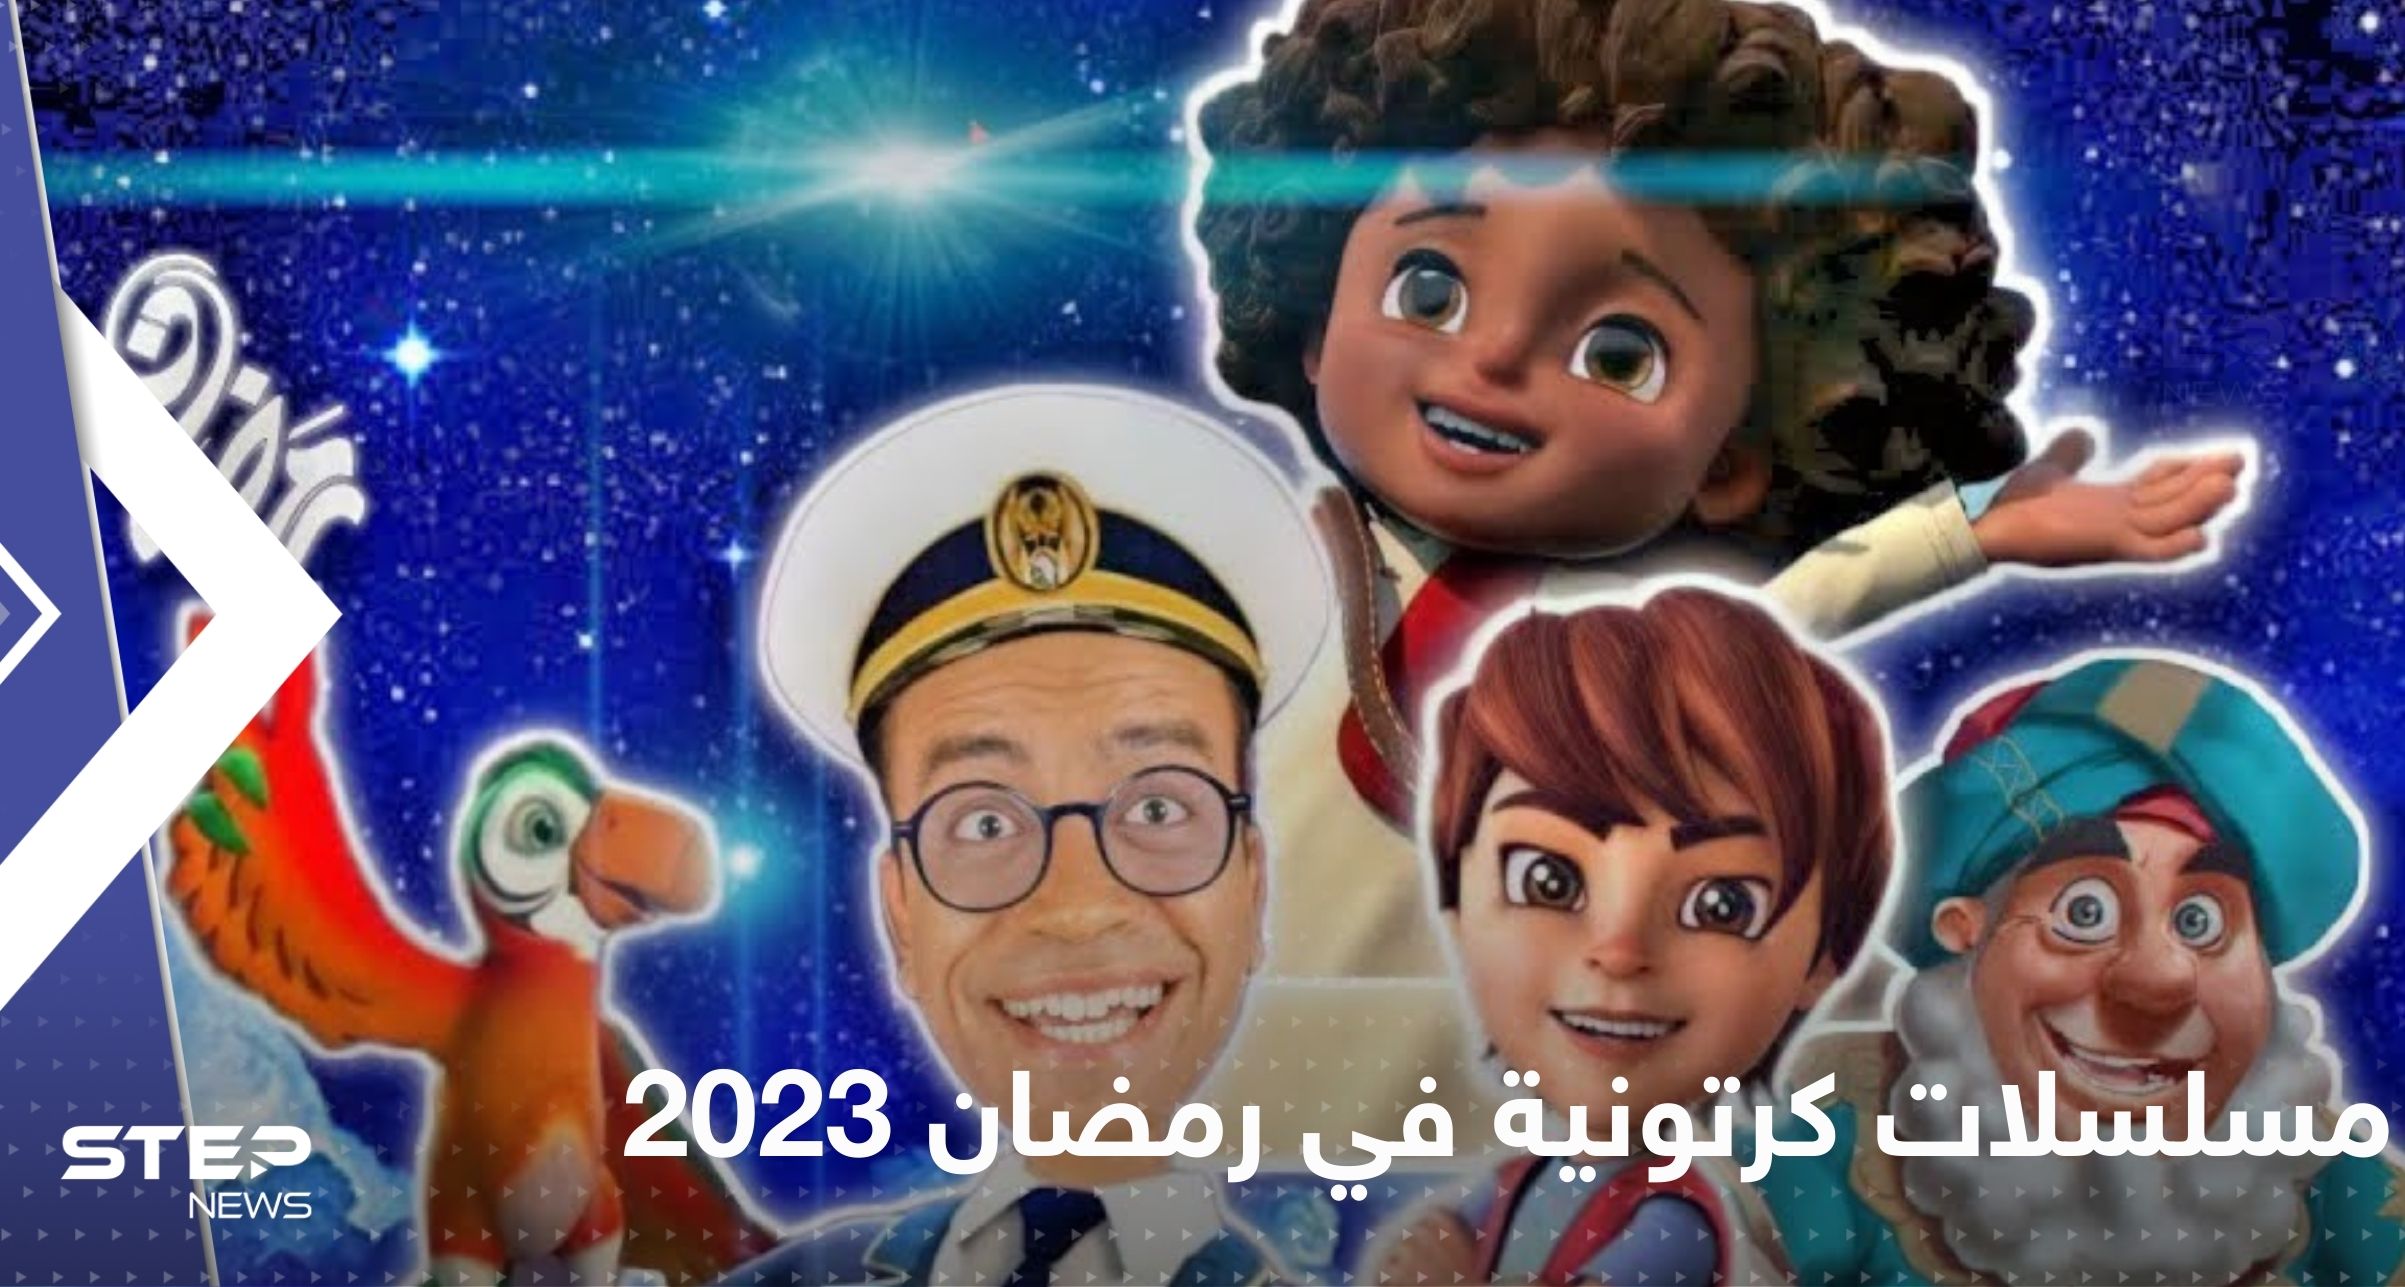 مسلسلات كرتونية في رمضان 2023.. قصص رائعة تعرض تحت شعار "محتوى آمن للأطفال"